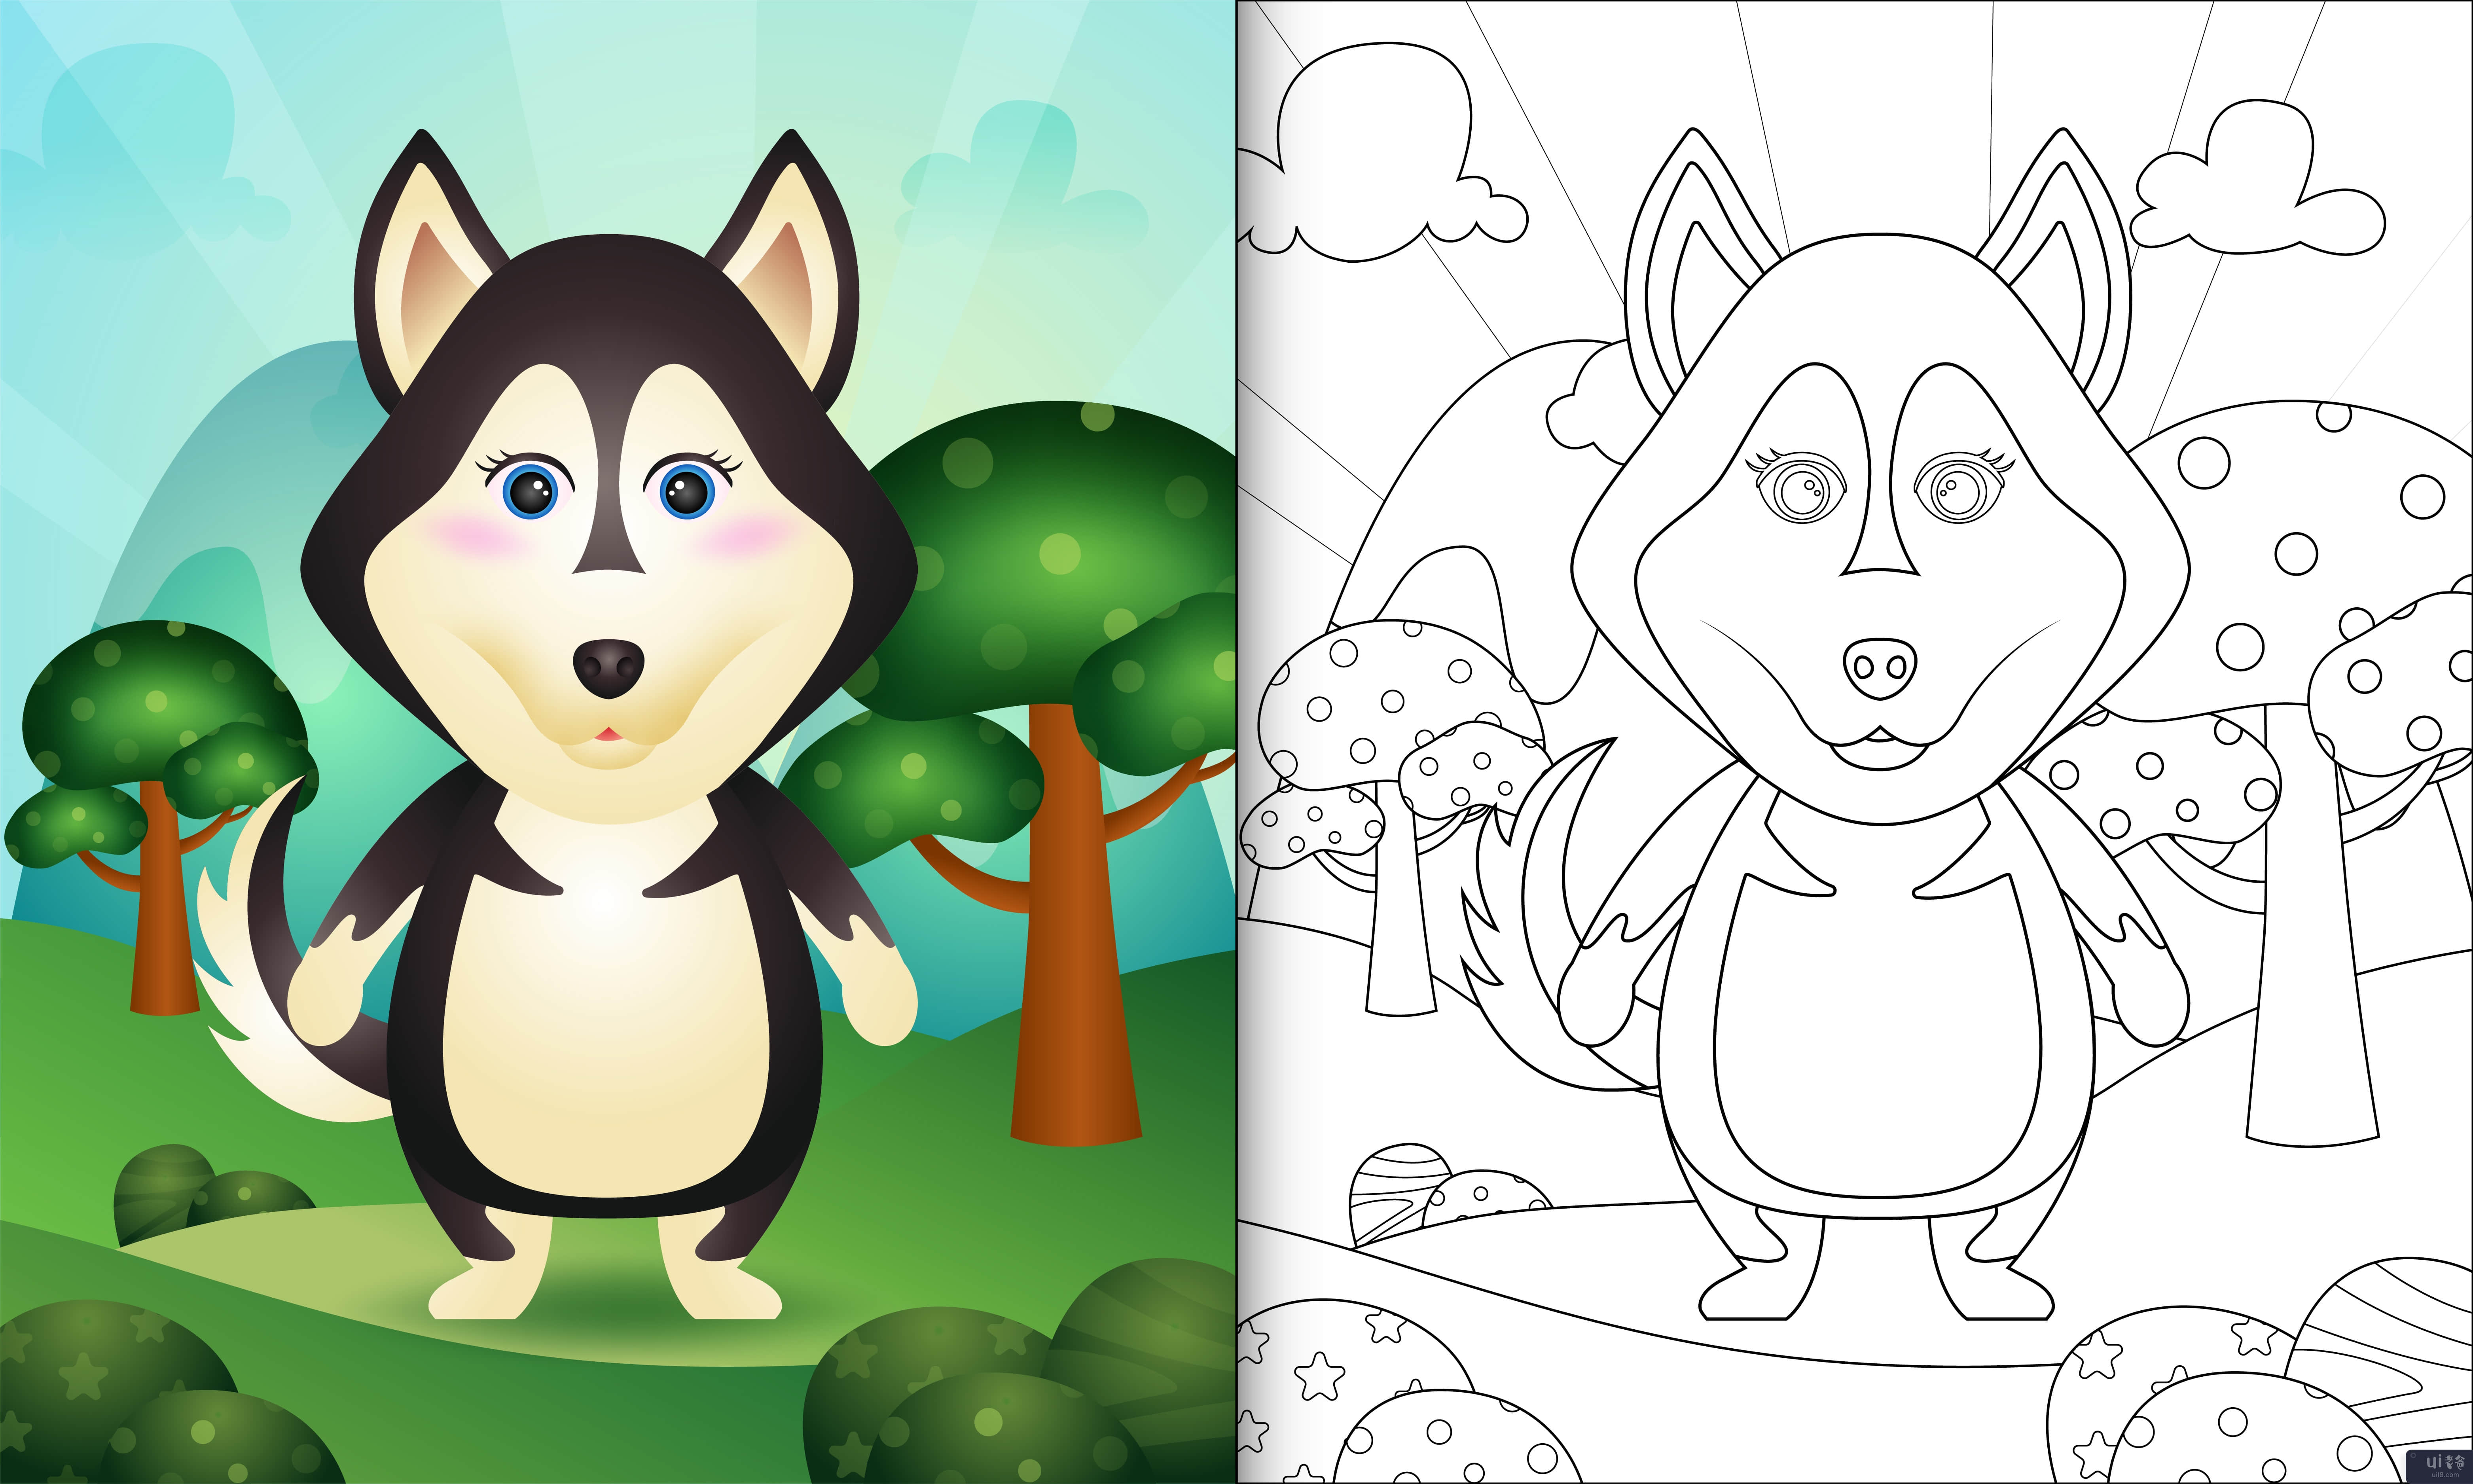 带有可爱哈士奇狗角色插图的儿童着色书(coloring book for kids with a cute husky dog character illustration)插图2